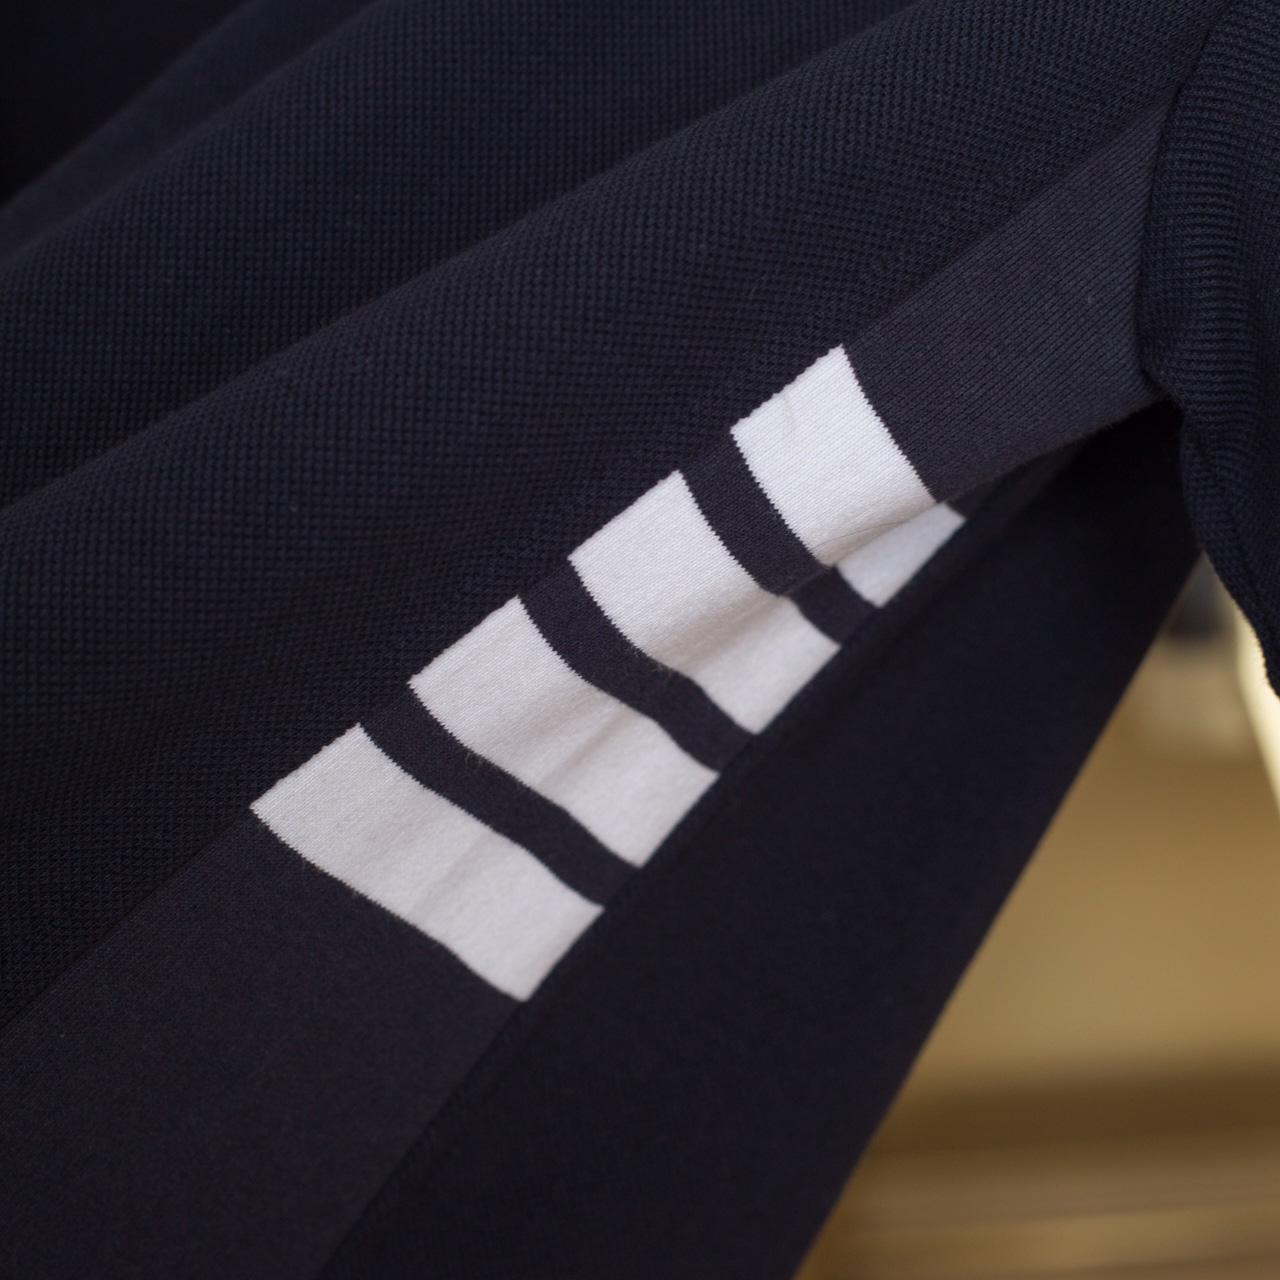 Thom Browne 4-Bar Piqué Polo Shirt   TB2065 - DesignerGu